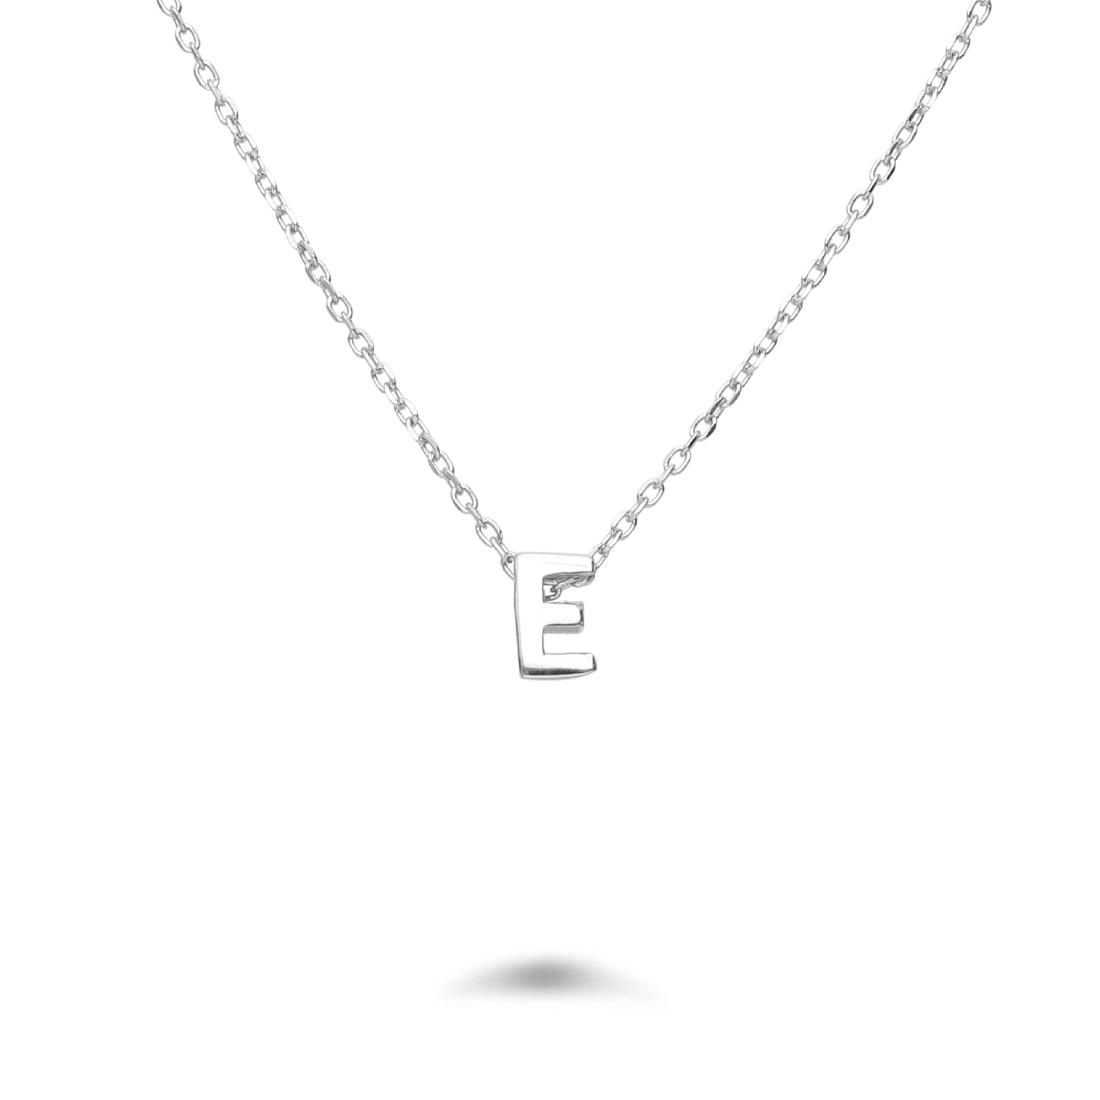 Rolò necklace in rhodium-plated silver with letter E - DESIDERI PREZIOSI